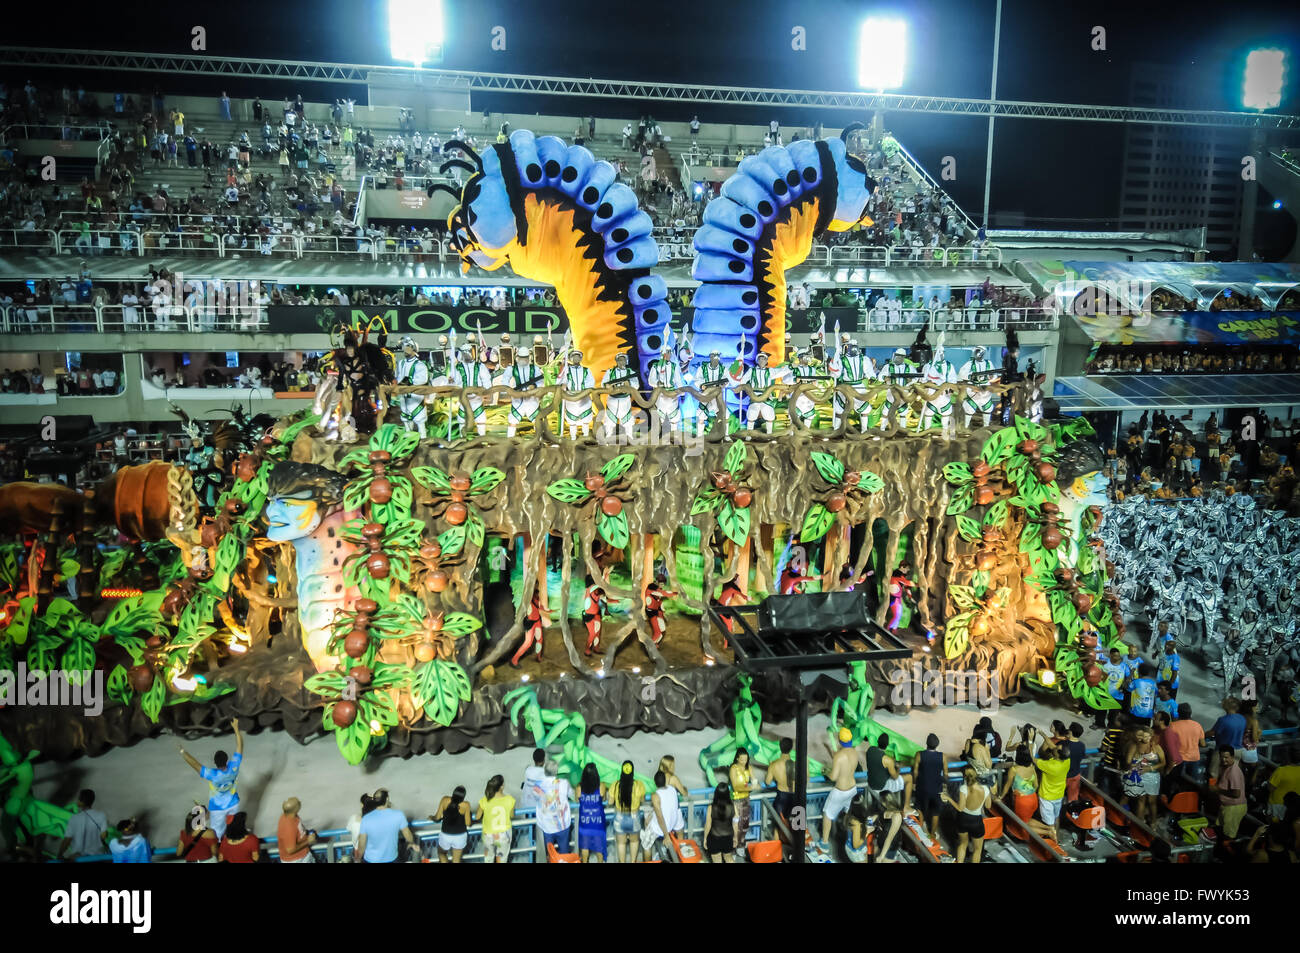 L'école de samba Unidos da Tijuca défilant au Carnaval de Rio 2016. Wagon allégorique et artistes défilant au Sambódromo Banque D'Images